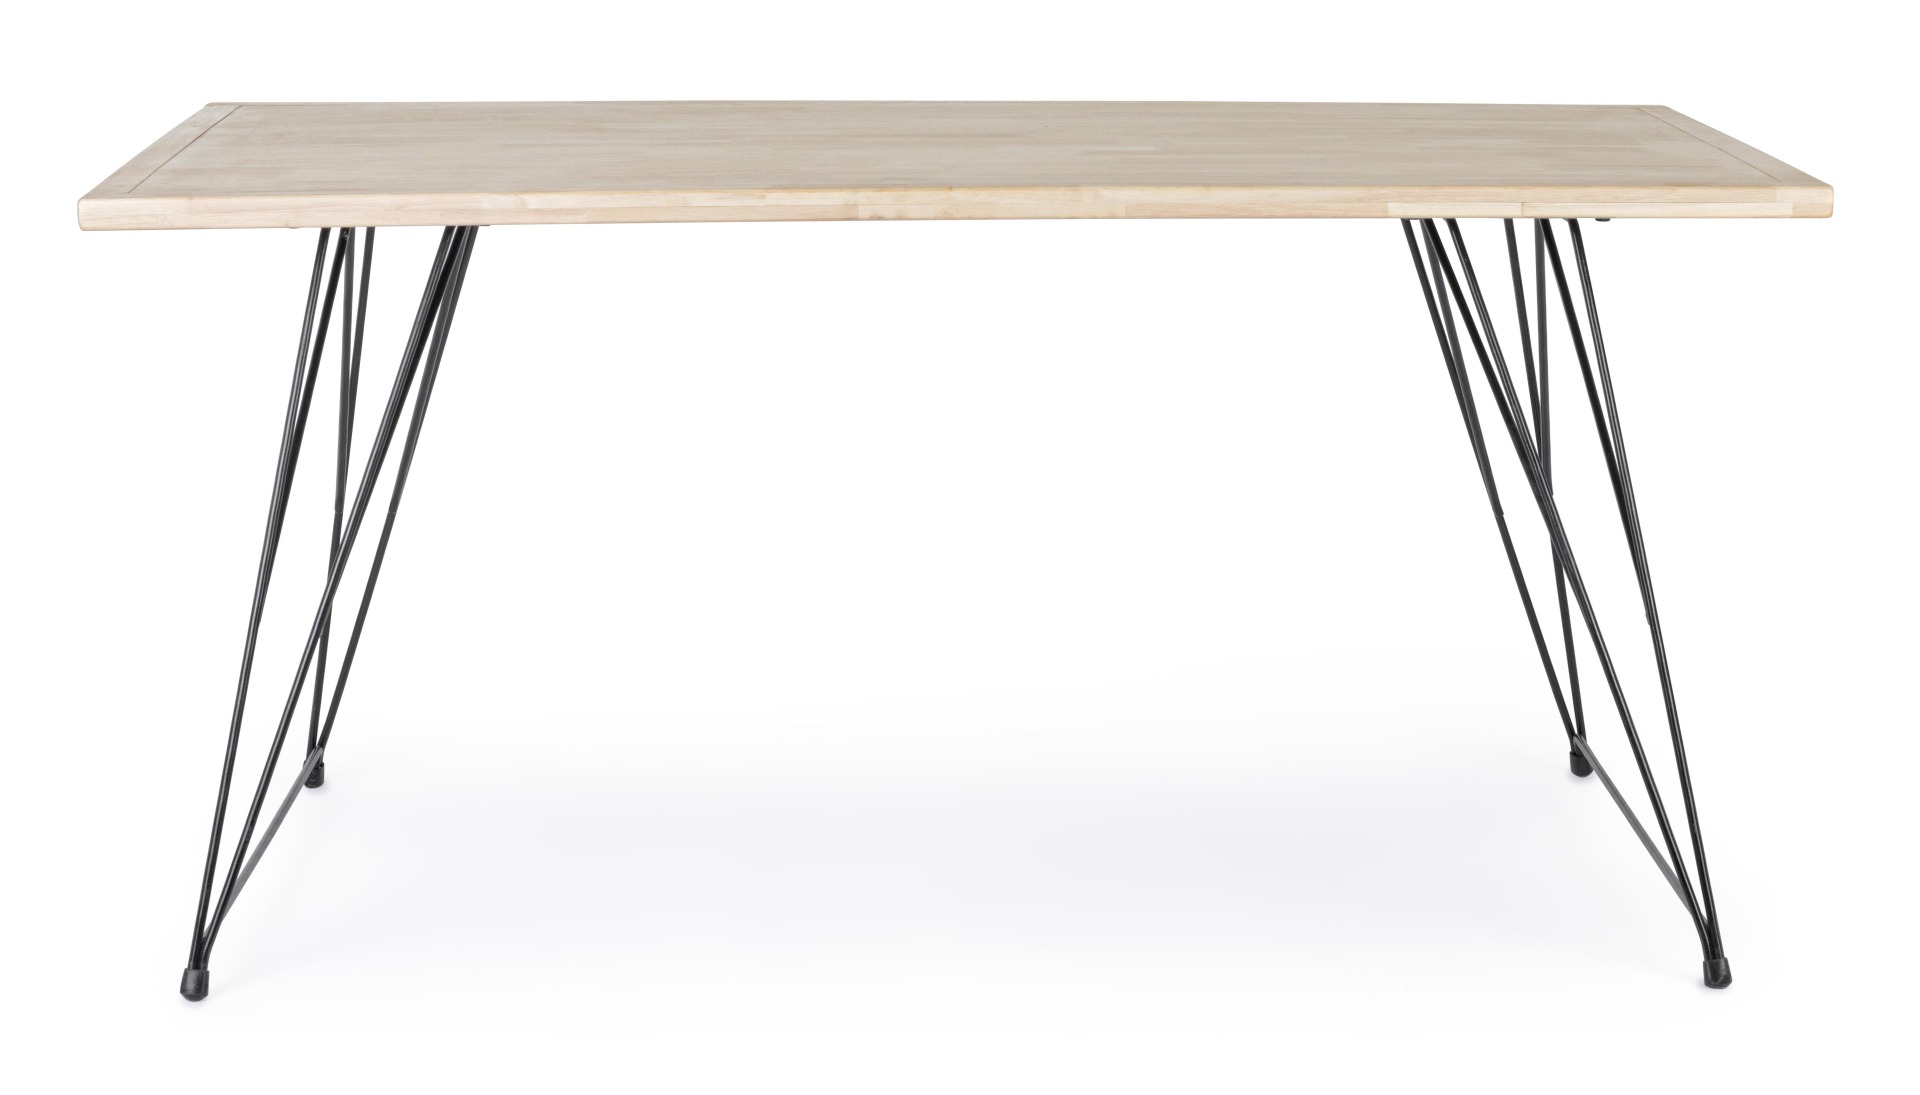 Der Esstisch District überzeugt mit seinem moderndem Design. Gefertigt wurde er aus Kautschukholz, welches einen natürlichen Farbton besitzt. Das Gestell des Tisches ist aus Metall und ist in eine schwarze Farbe. Der Tisch besitzt eine Breite von 160 cm.